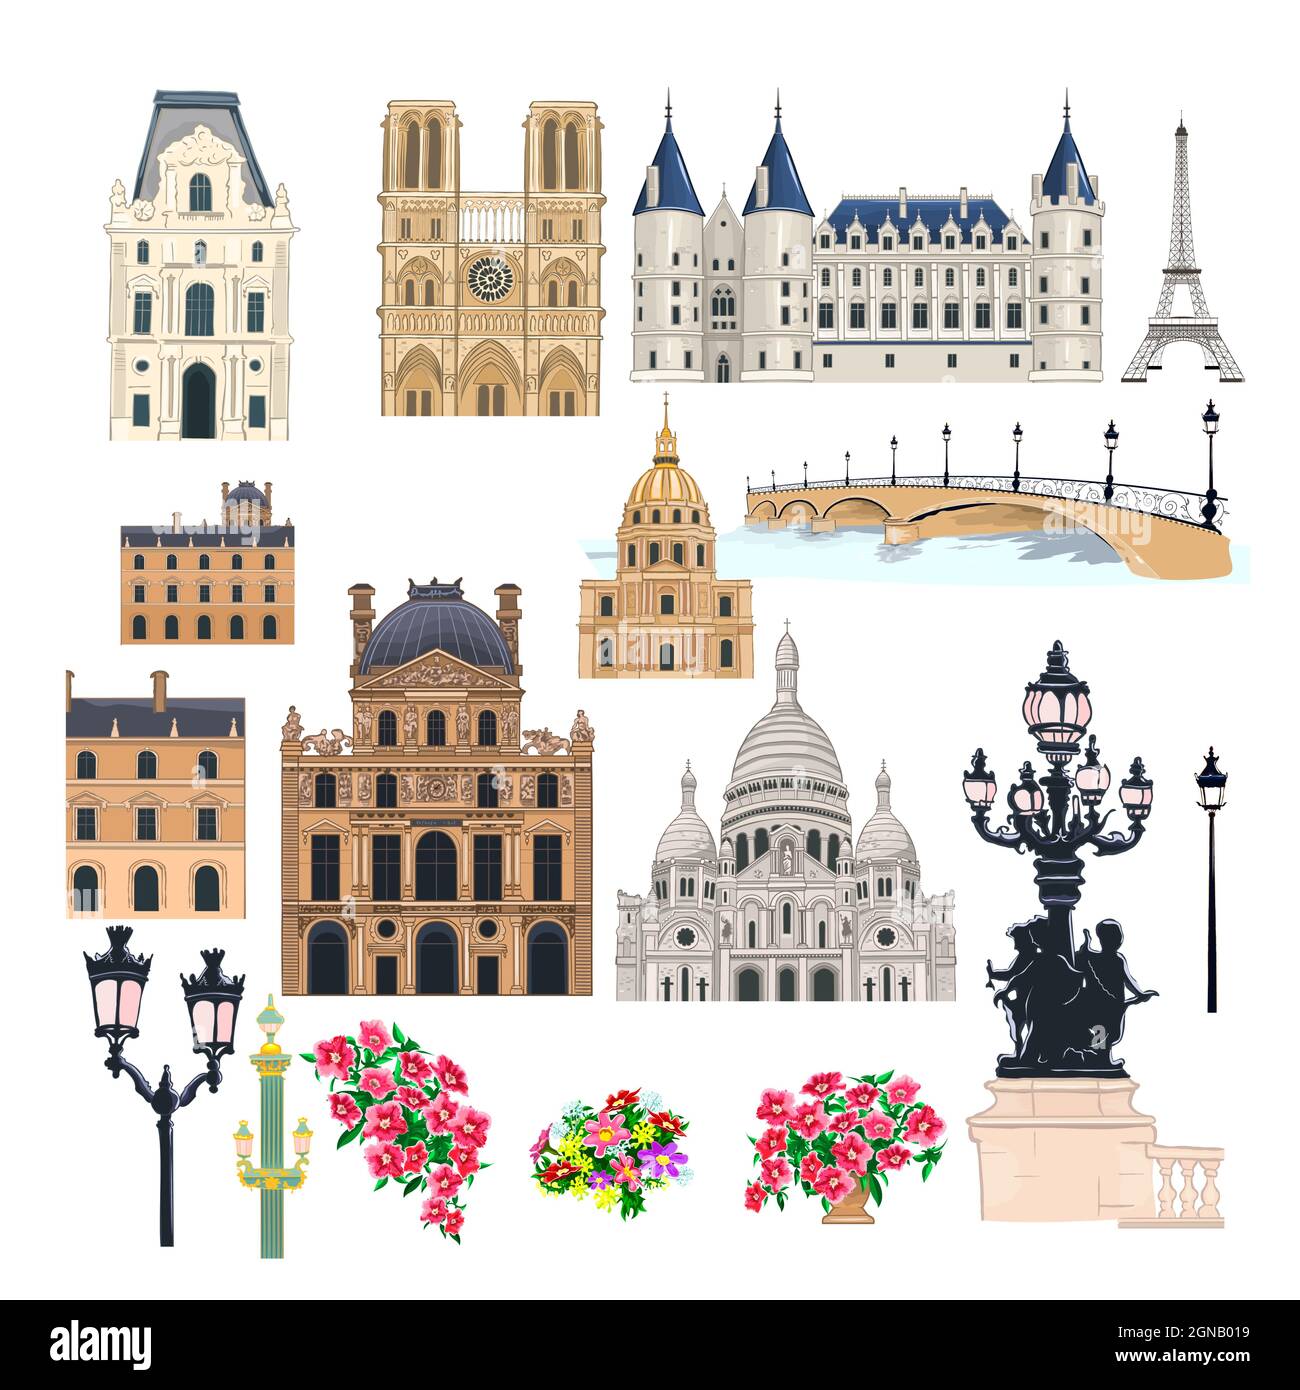 Set von verschiedenen schönen alten Gebäuden und architektonischen Strukturen von Paris. Paris und seine historischen Sehenswürdigkeiten. Stock Vektor